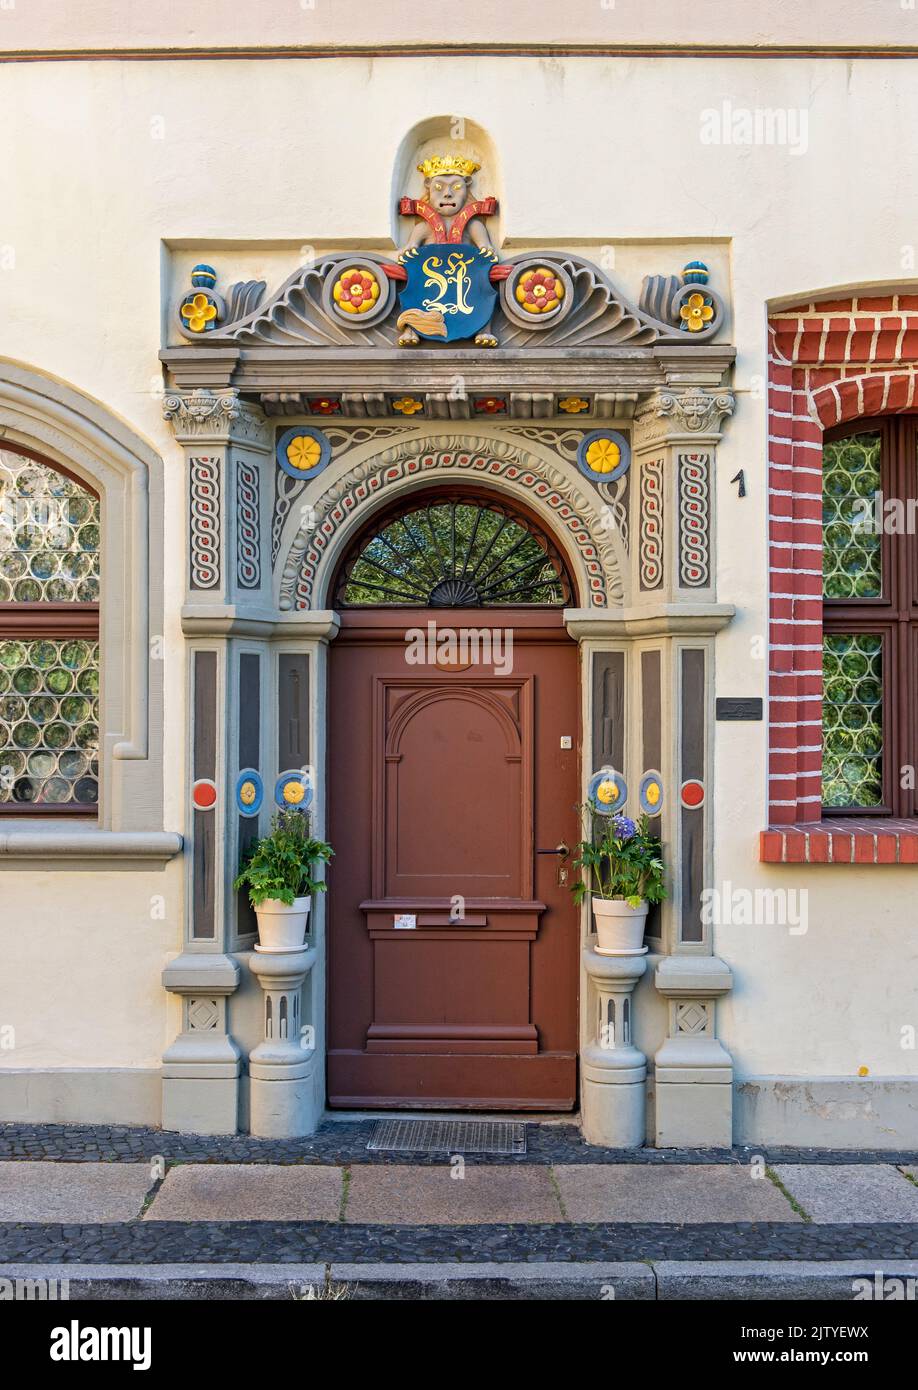 Portail Renaissance, Maison d'hôtes Flyns, Langenstraße, Görlitz, Allemagne Banque D'Images